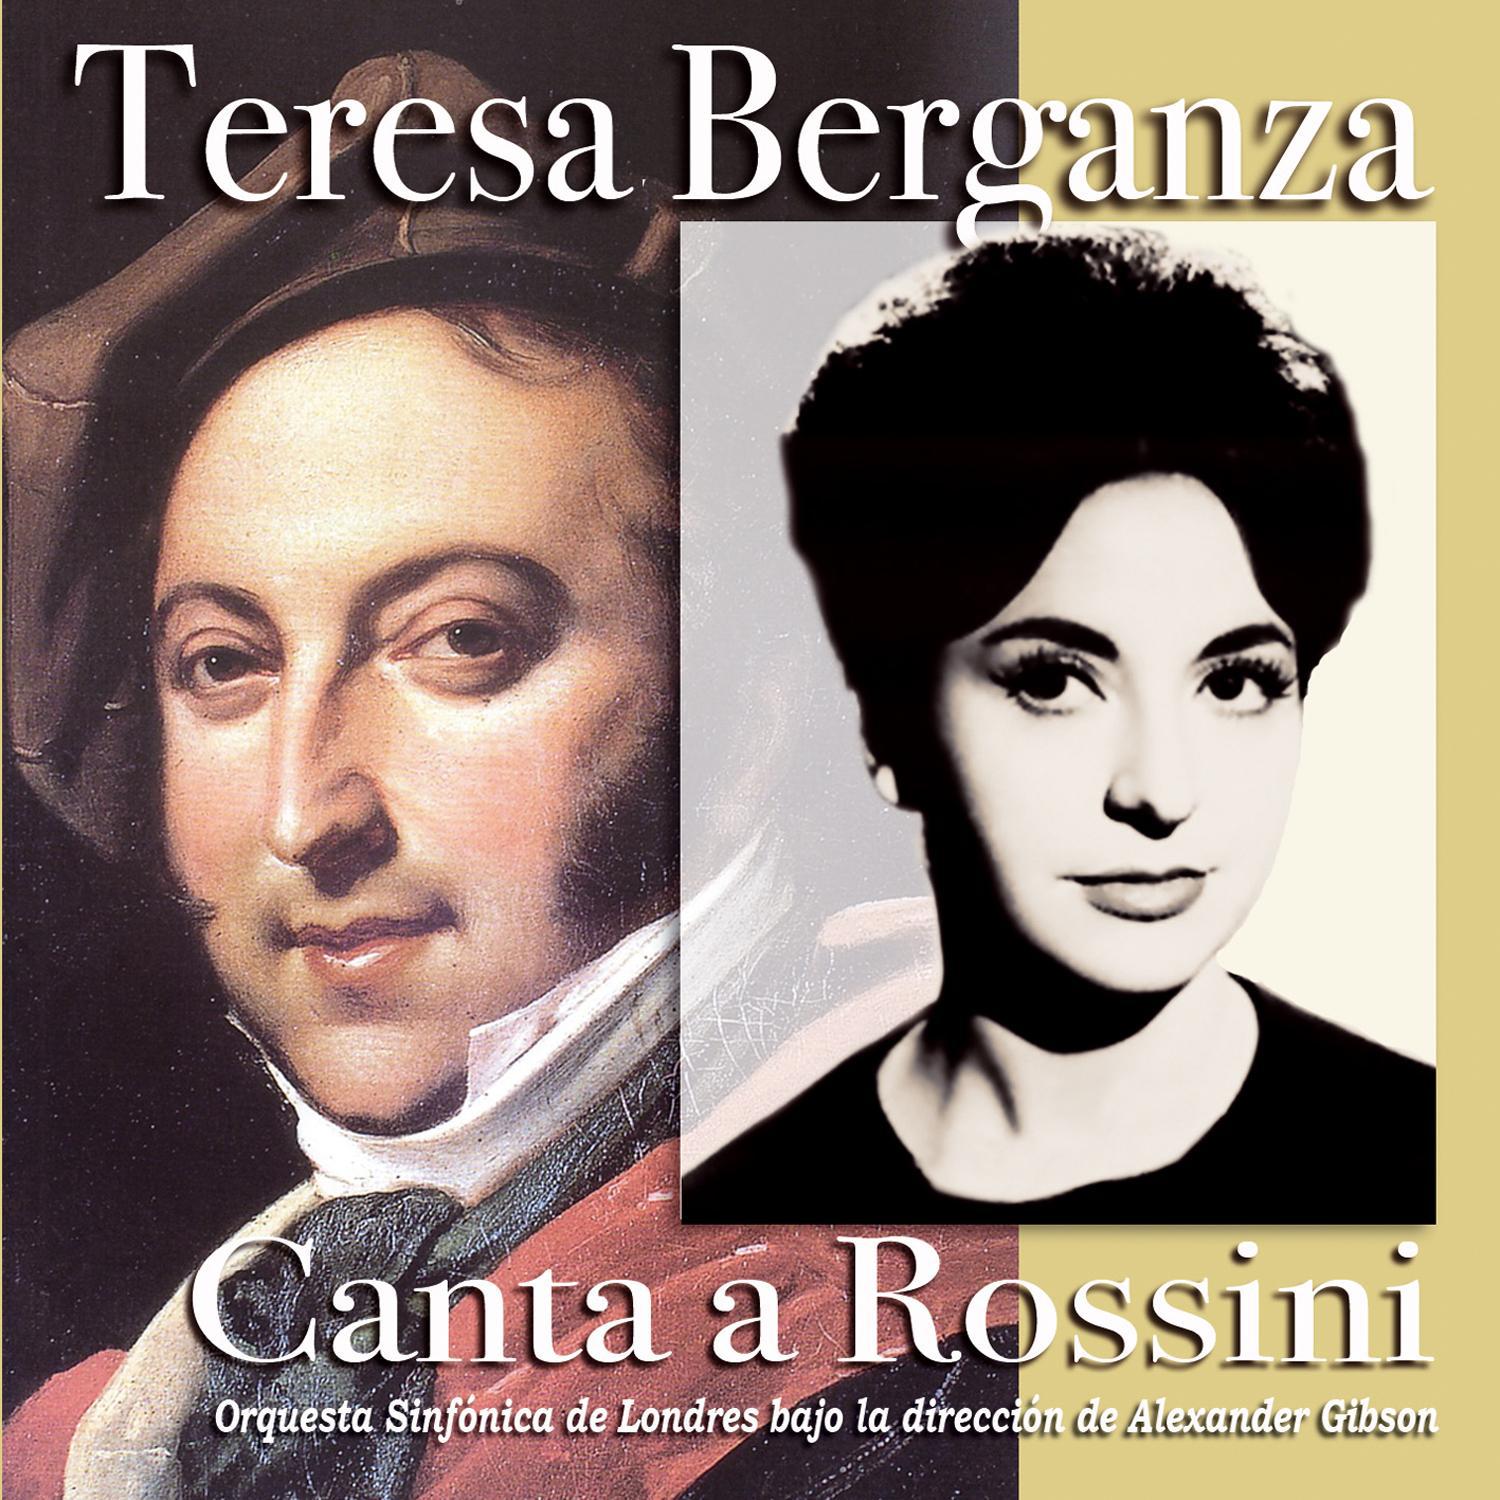 Teresa Berganza Canta a Rossini